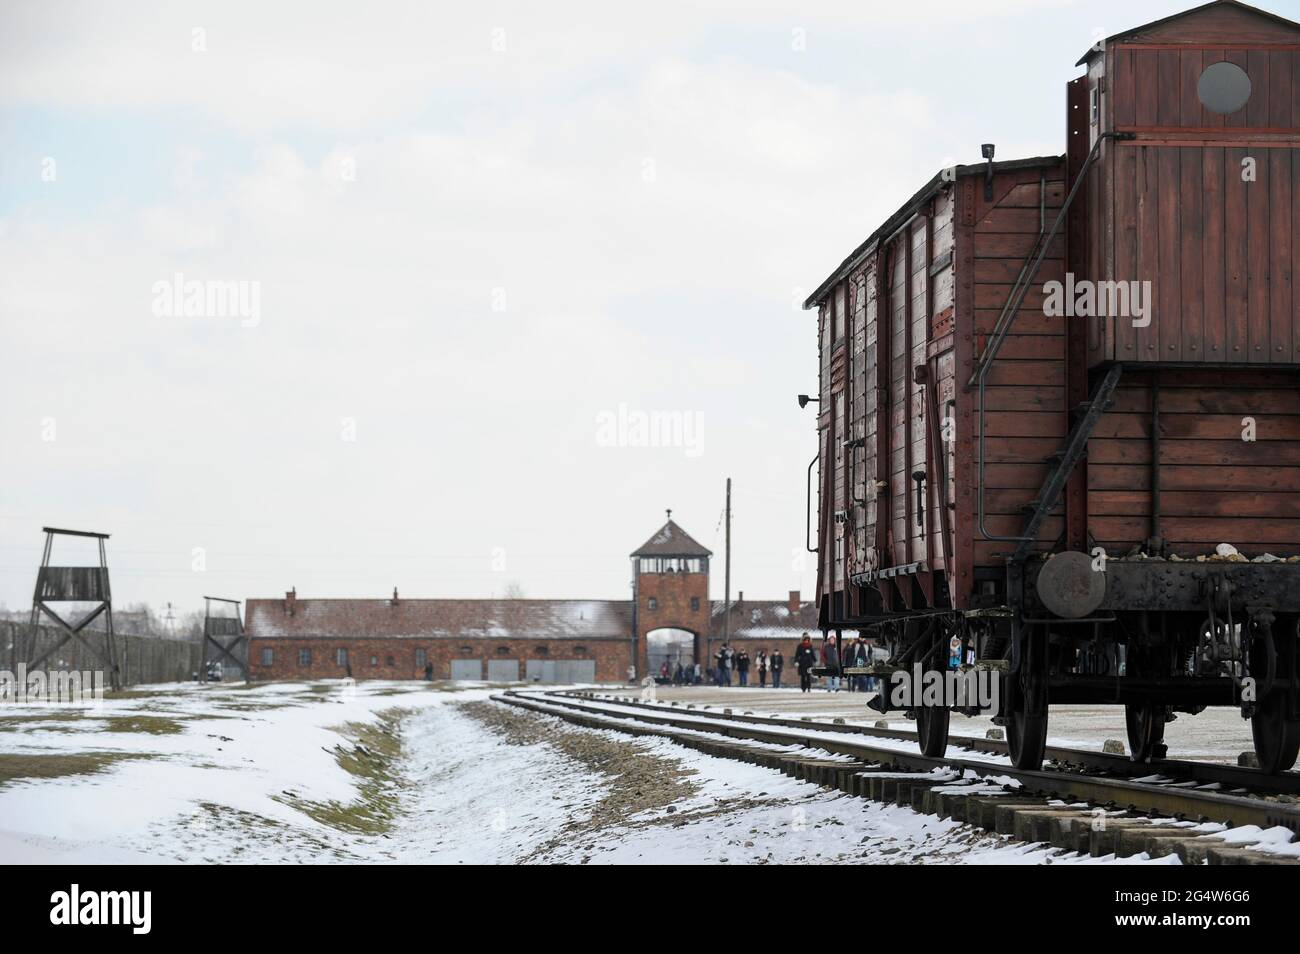 POLONIA , Oswiecim, Auschwitz-Birkenau, campo di concentramento del regime nazista tedesco, dove 1 milione di ebrei sono stati uccisi dalle SS (1940–1945) , ferrovia per il trasporto di ebrei da tutta europa alle camere a gas, vagone ferroviario Foto Stock